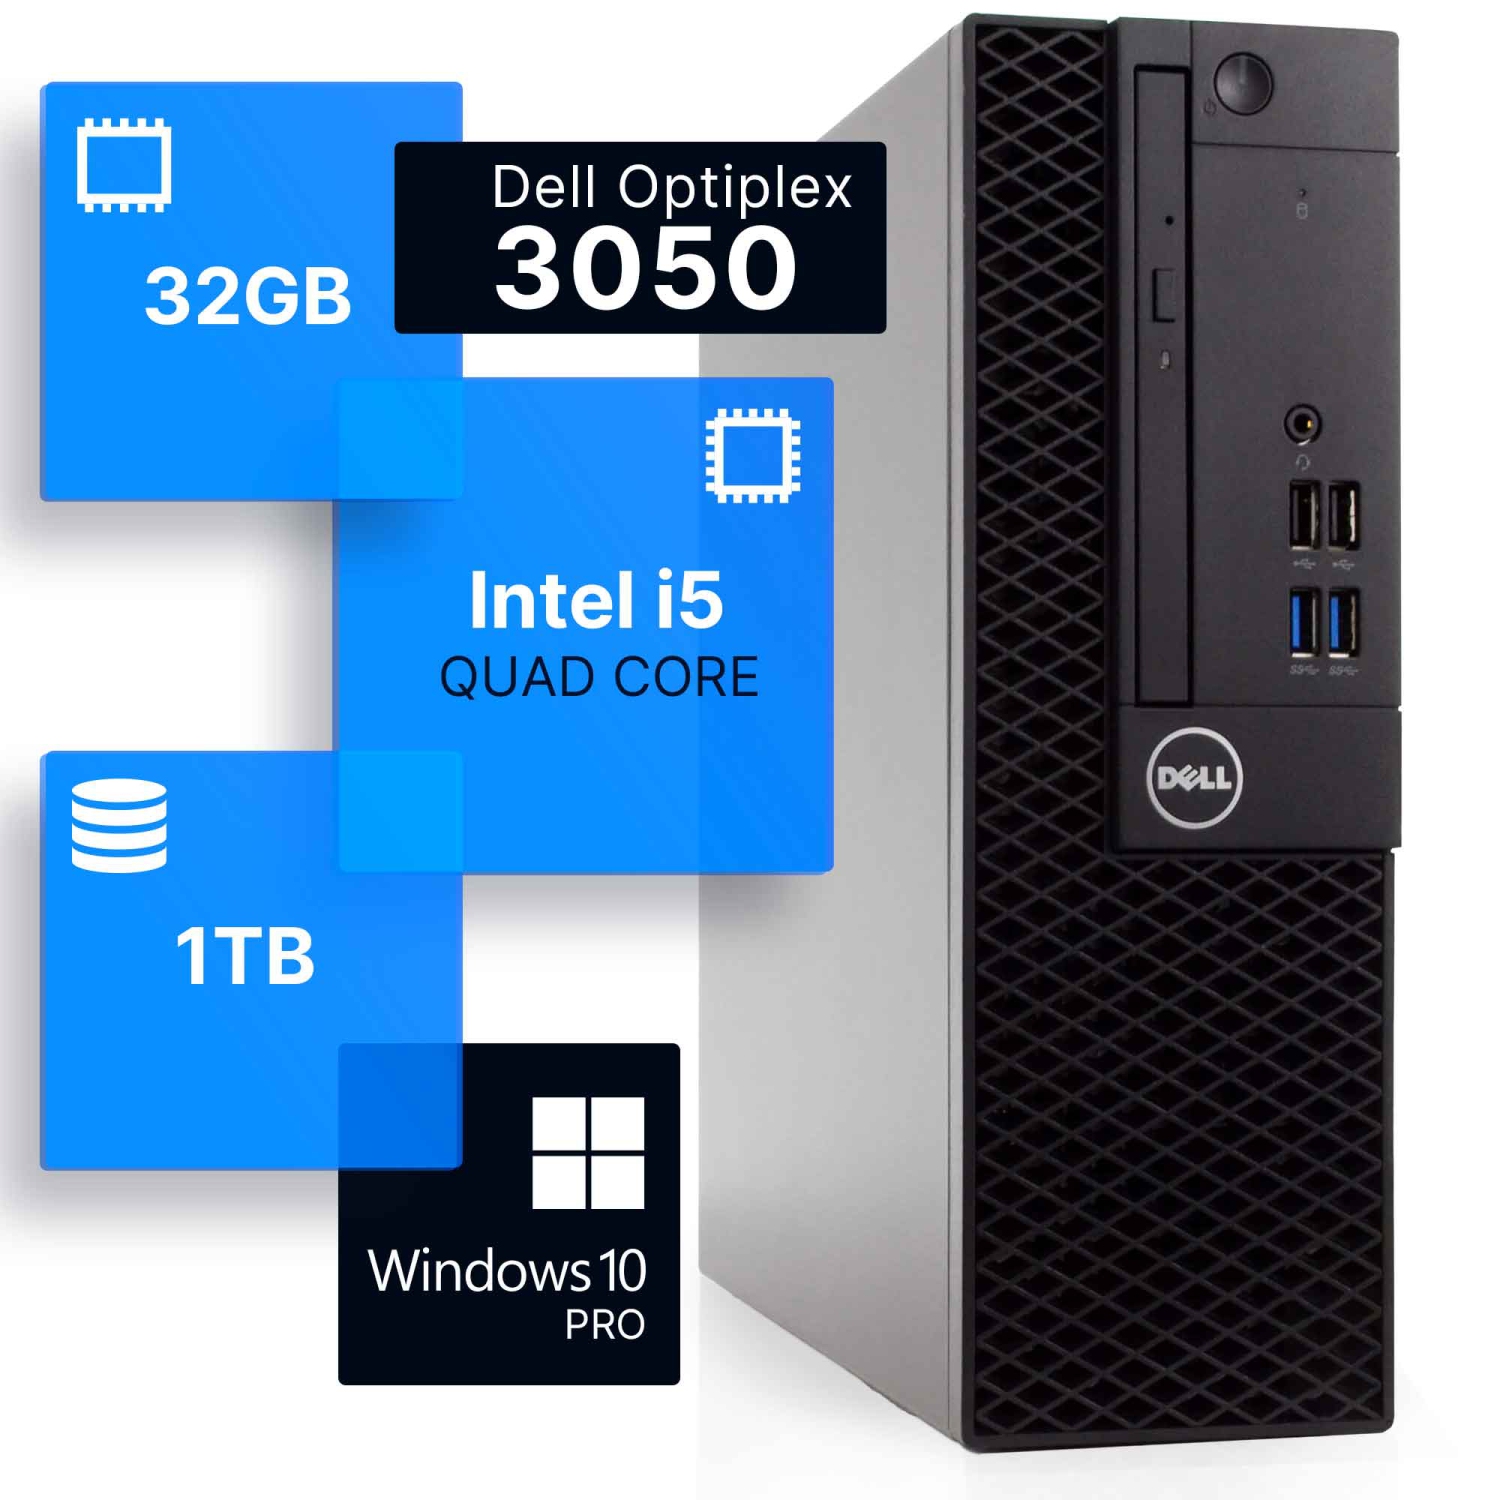 Refurbished (Good) - Dell Optiplex 3050 Desktop Computer | Quad Intel i5 (3.2)Gen 7 | 32GB DDR4 RAM | 1TB SSD | Windows 10 Professional | Built-in Wi-Fi AX200